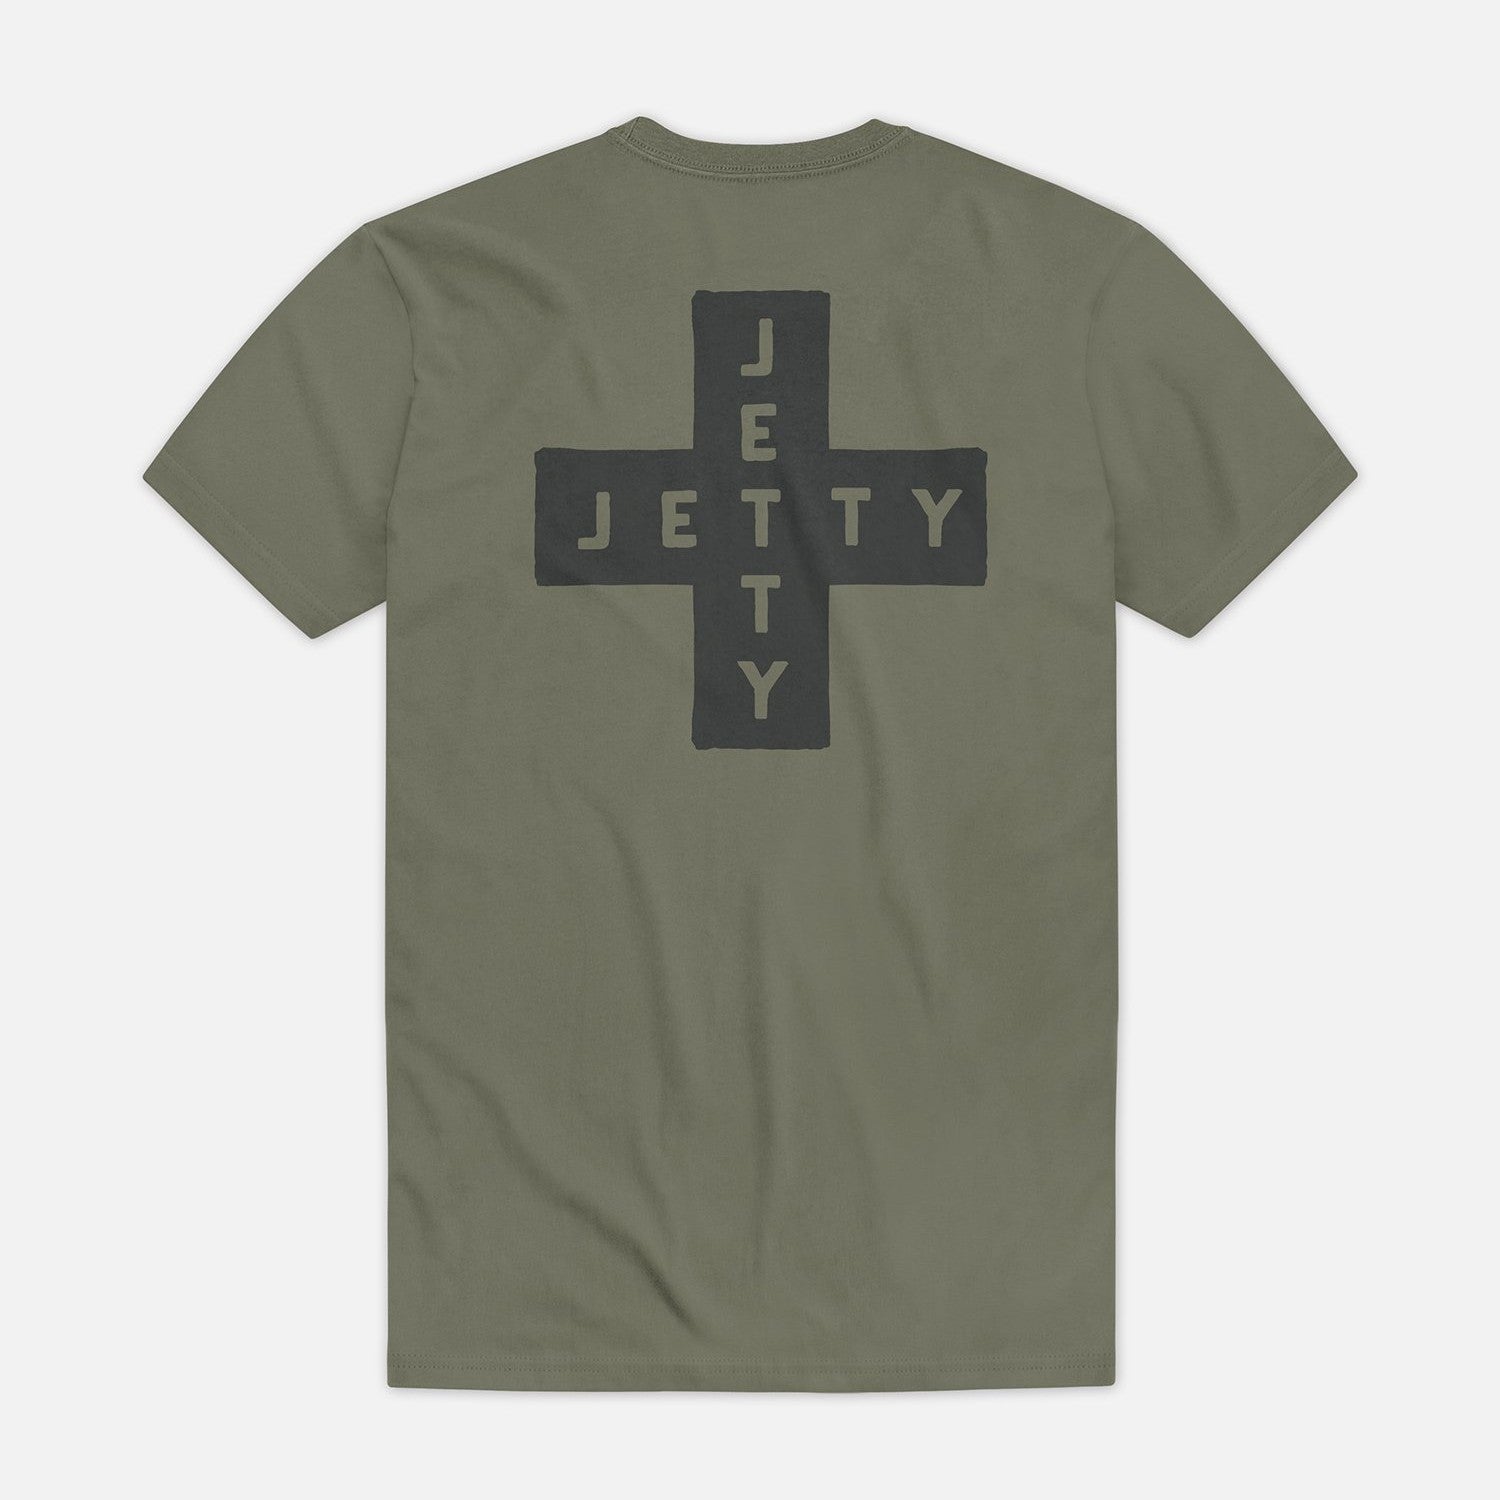 Jetty Portside Tee Shirt